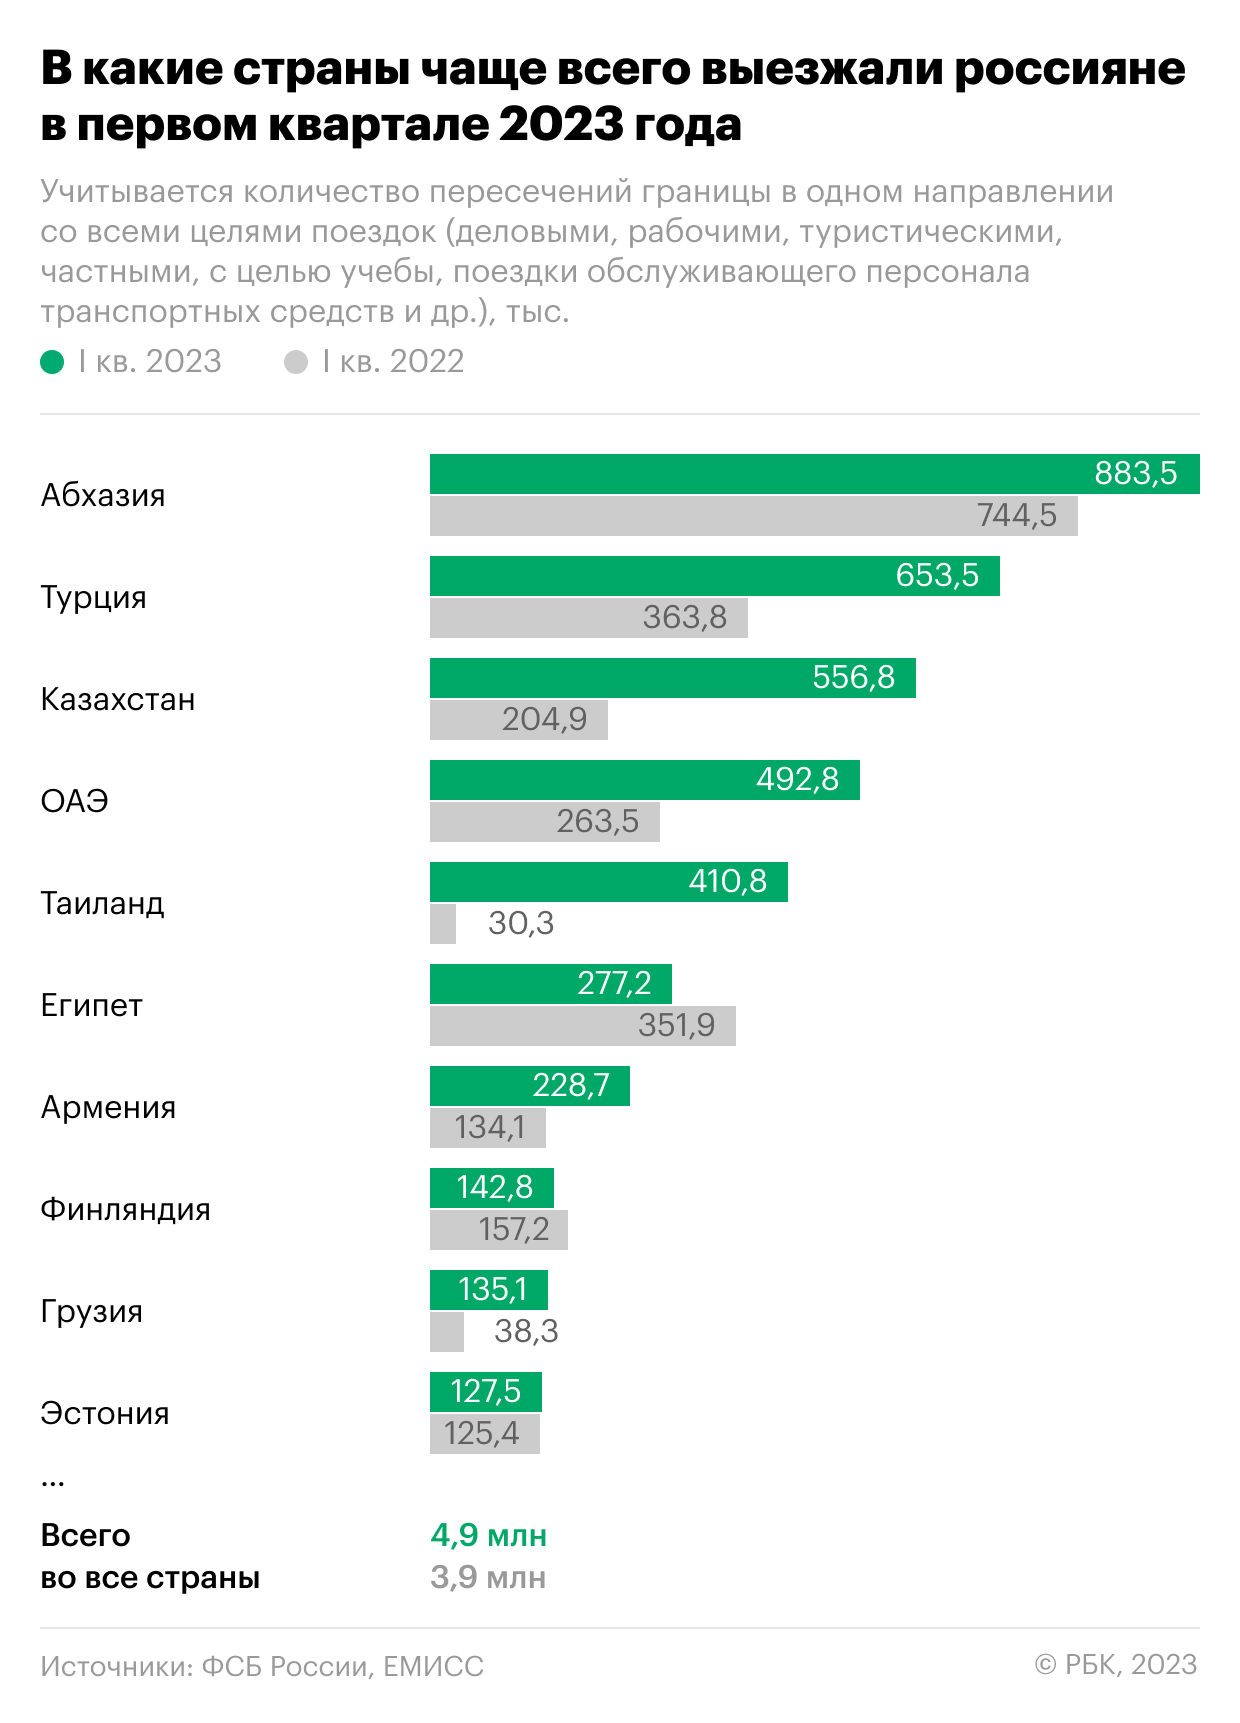 В какие страны россияне чаще всего ездили в начале 2023 года. Инфографика